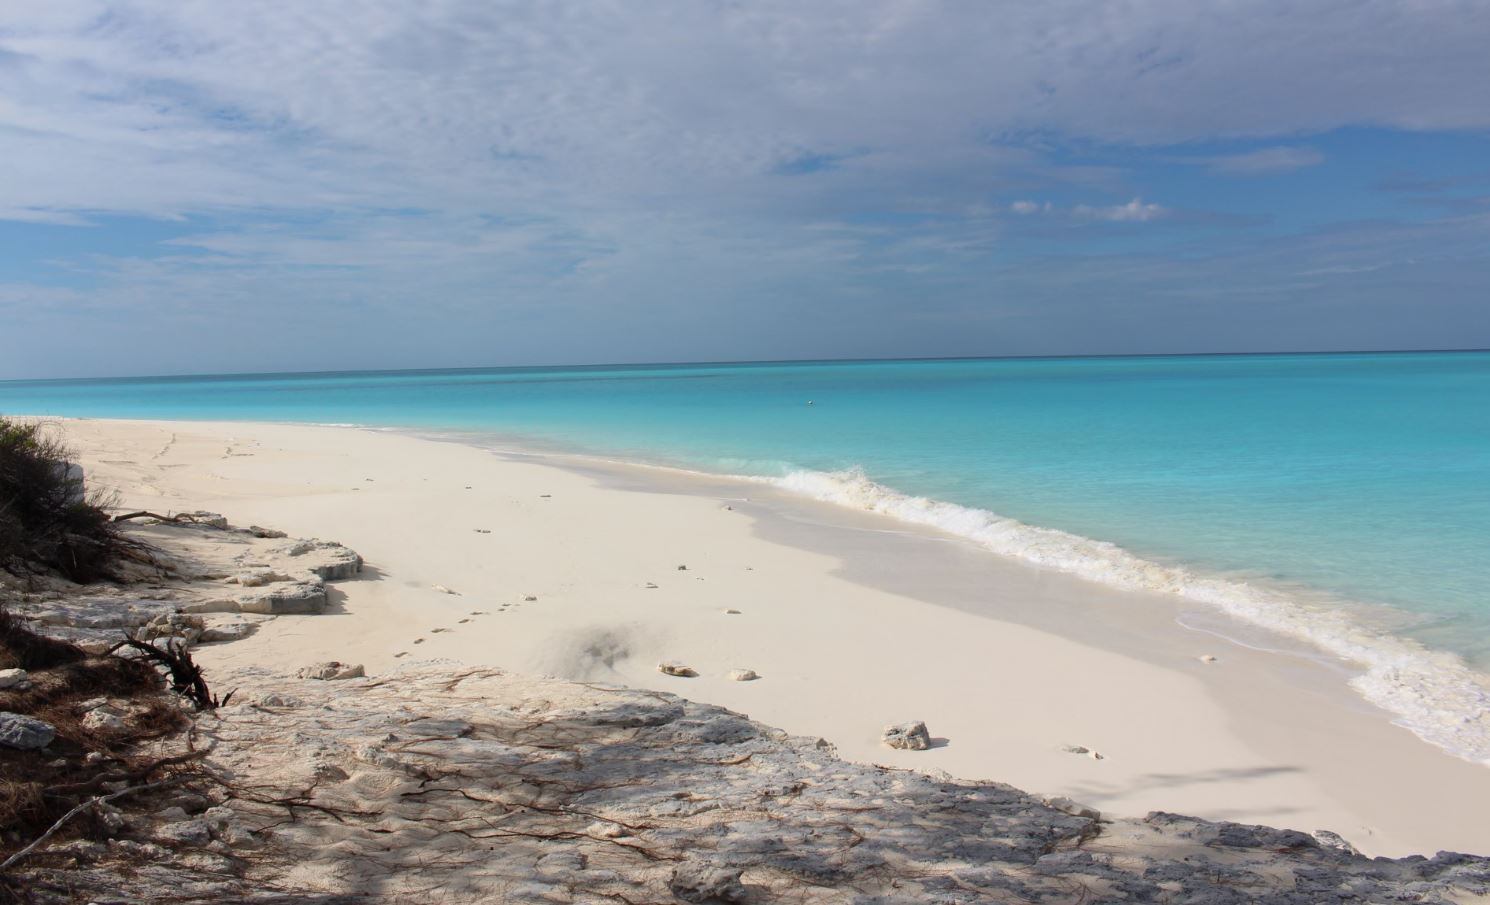 Caminhando ao longo da praia, Cape Santa Maria Beach Resort, Long Island, Bahamas. Autor e Copyright Marco Ramerini